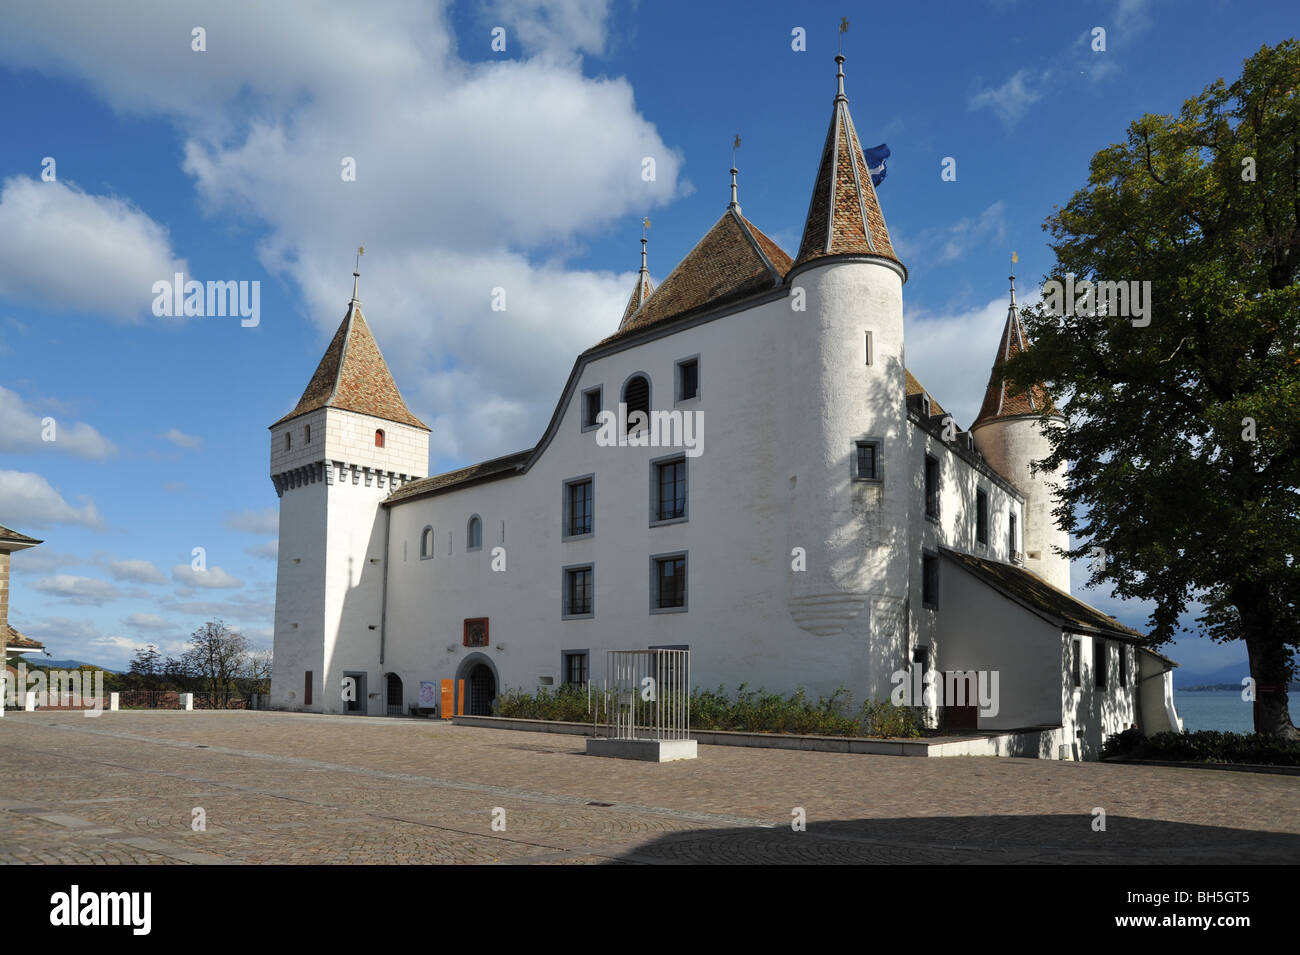 Le Château Blanc à Nyon sur le lac de Genève, Vaud, Suisse. Le château est aujourd'hui un musée de porcelaine fabriqués localement. Banque D'Images